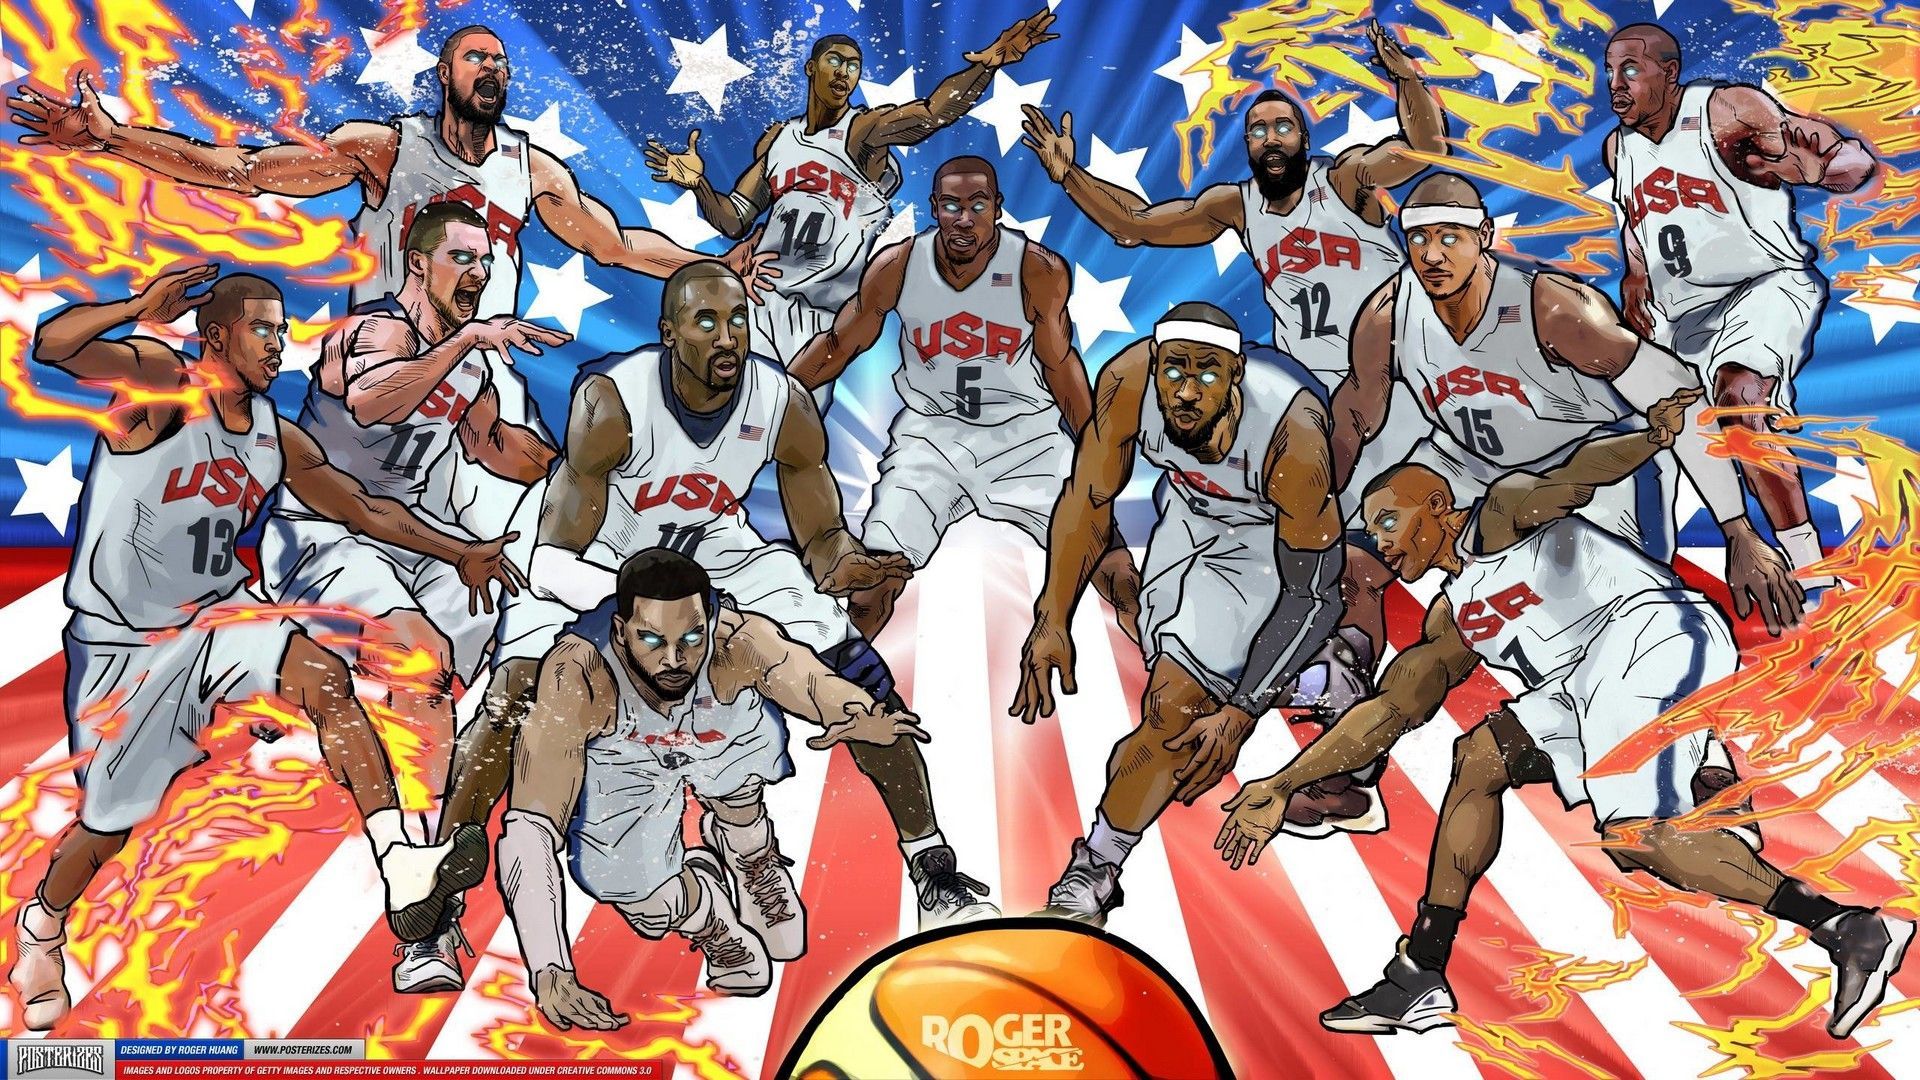 NBA DESKTOP WALLPAPERS. Nba wallpaper, Basketball wallpaper, Cartoon wallpaper